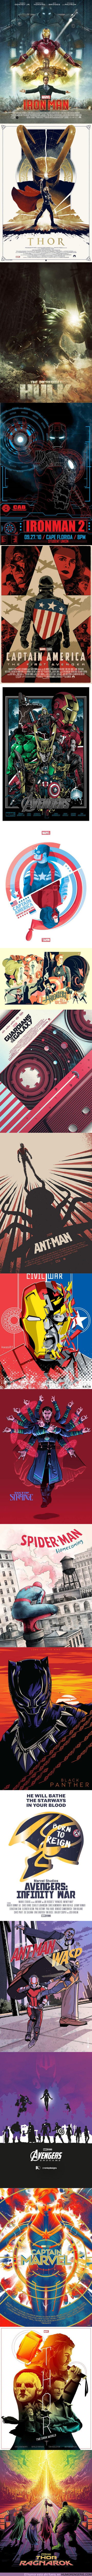 37705 - GALERÍA: 20 pósters alternativos de películas de Marvel